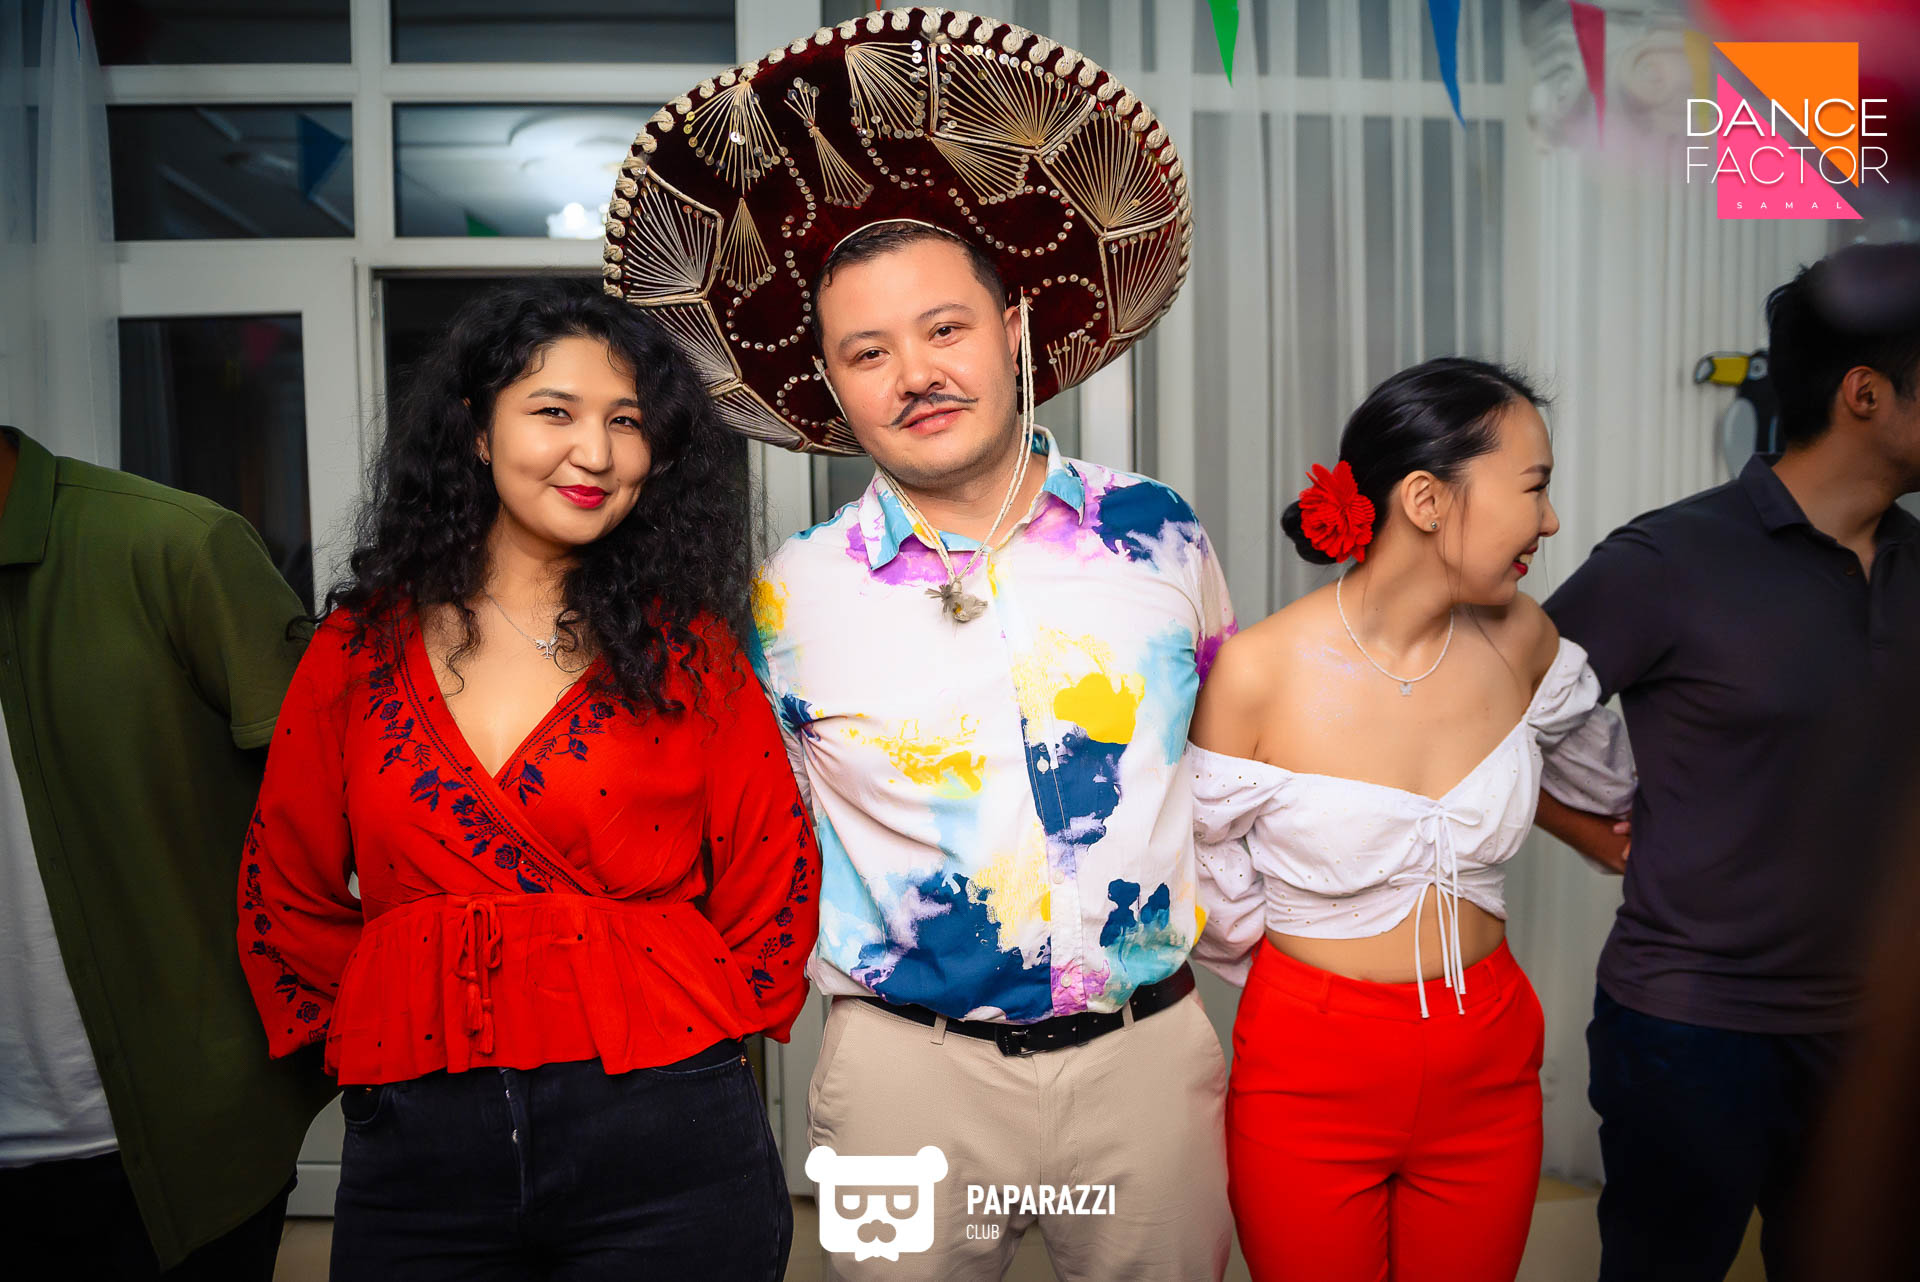 Мексиканская вечеринка "Dance factor"